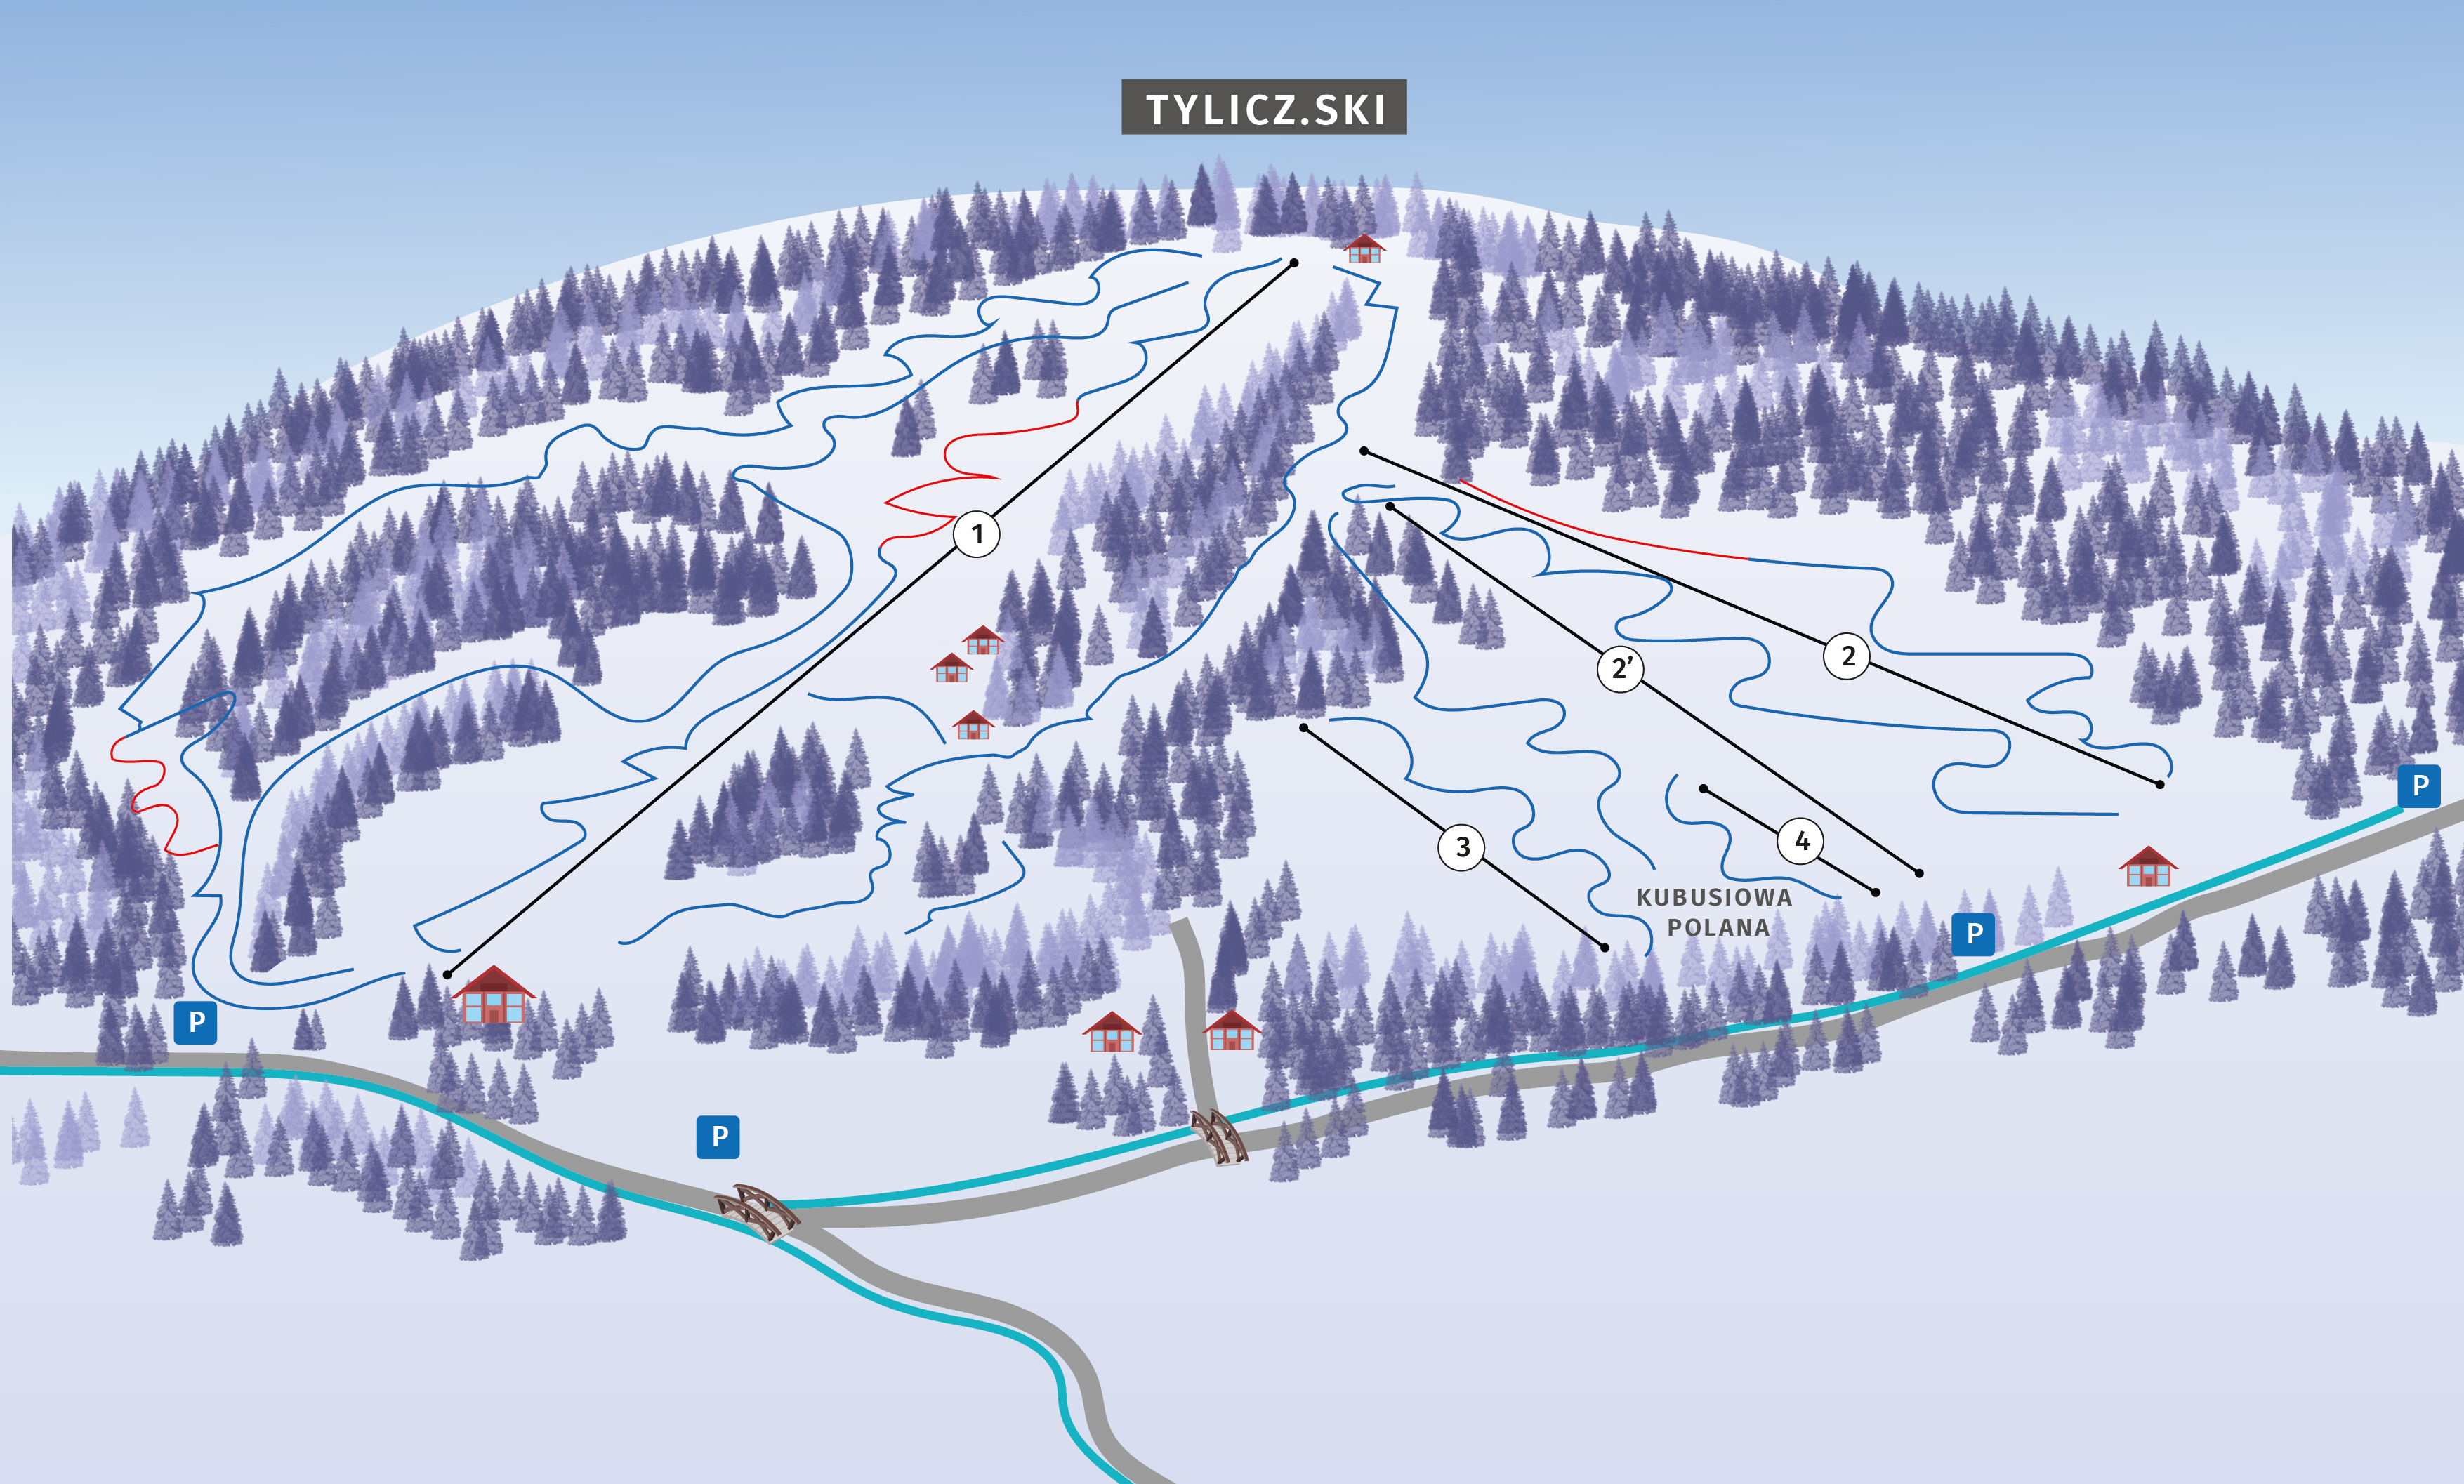 mapa stacji narciarskiej Tylicz ski